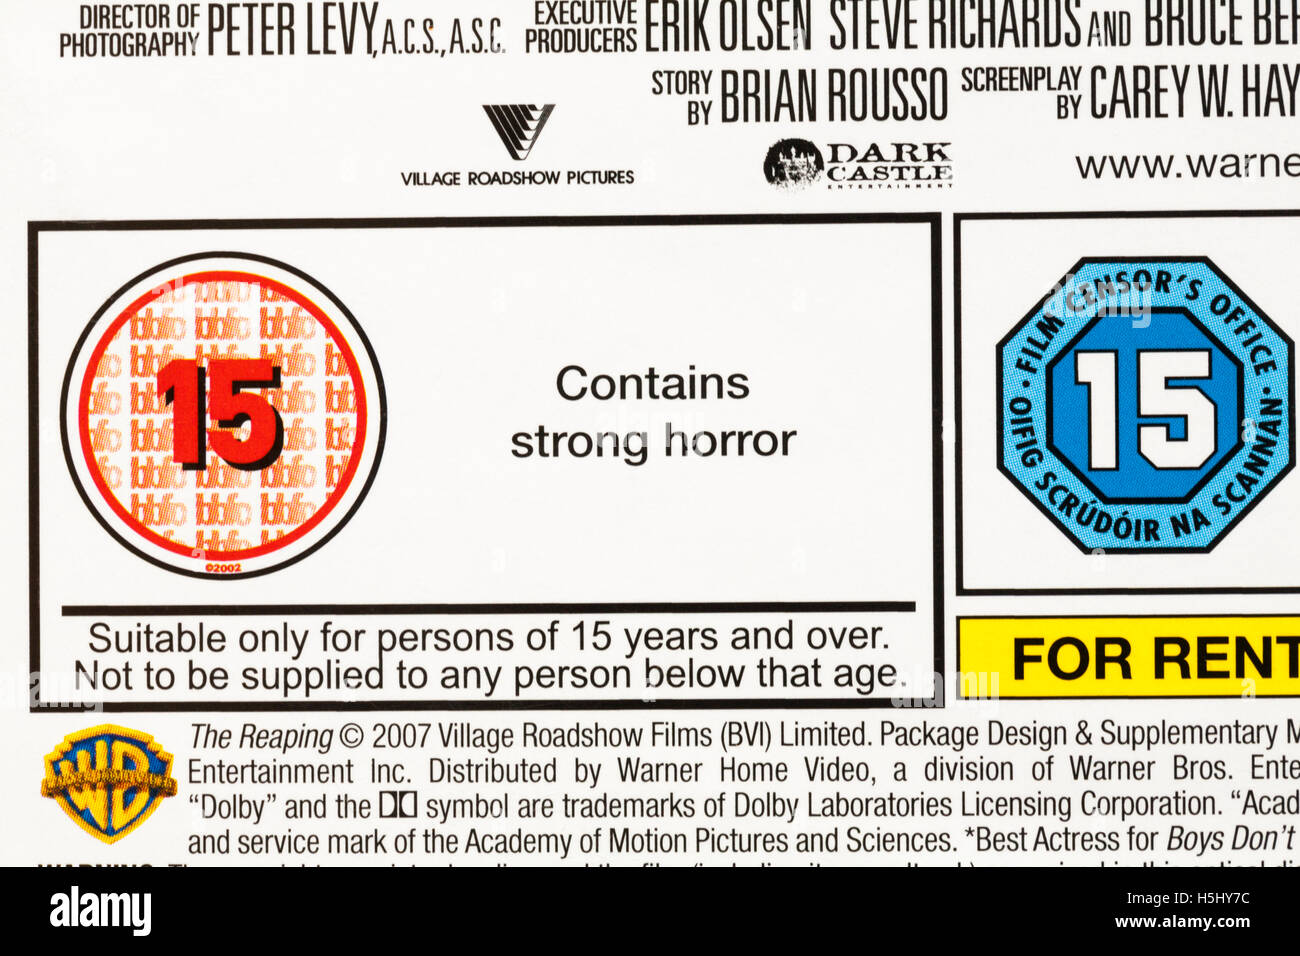 15 note sur l'affaire HD DVD - horreur contient de solides adaptés aux personnes de 15 ans et plus. Banque D'Images